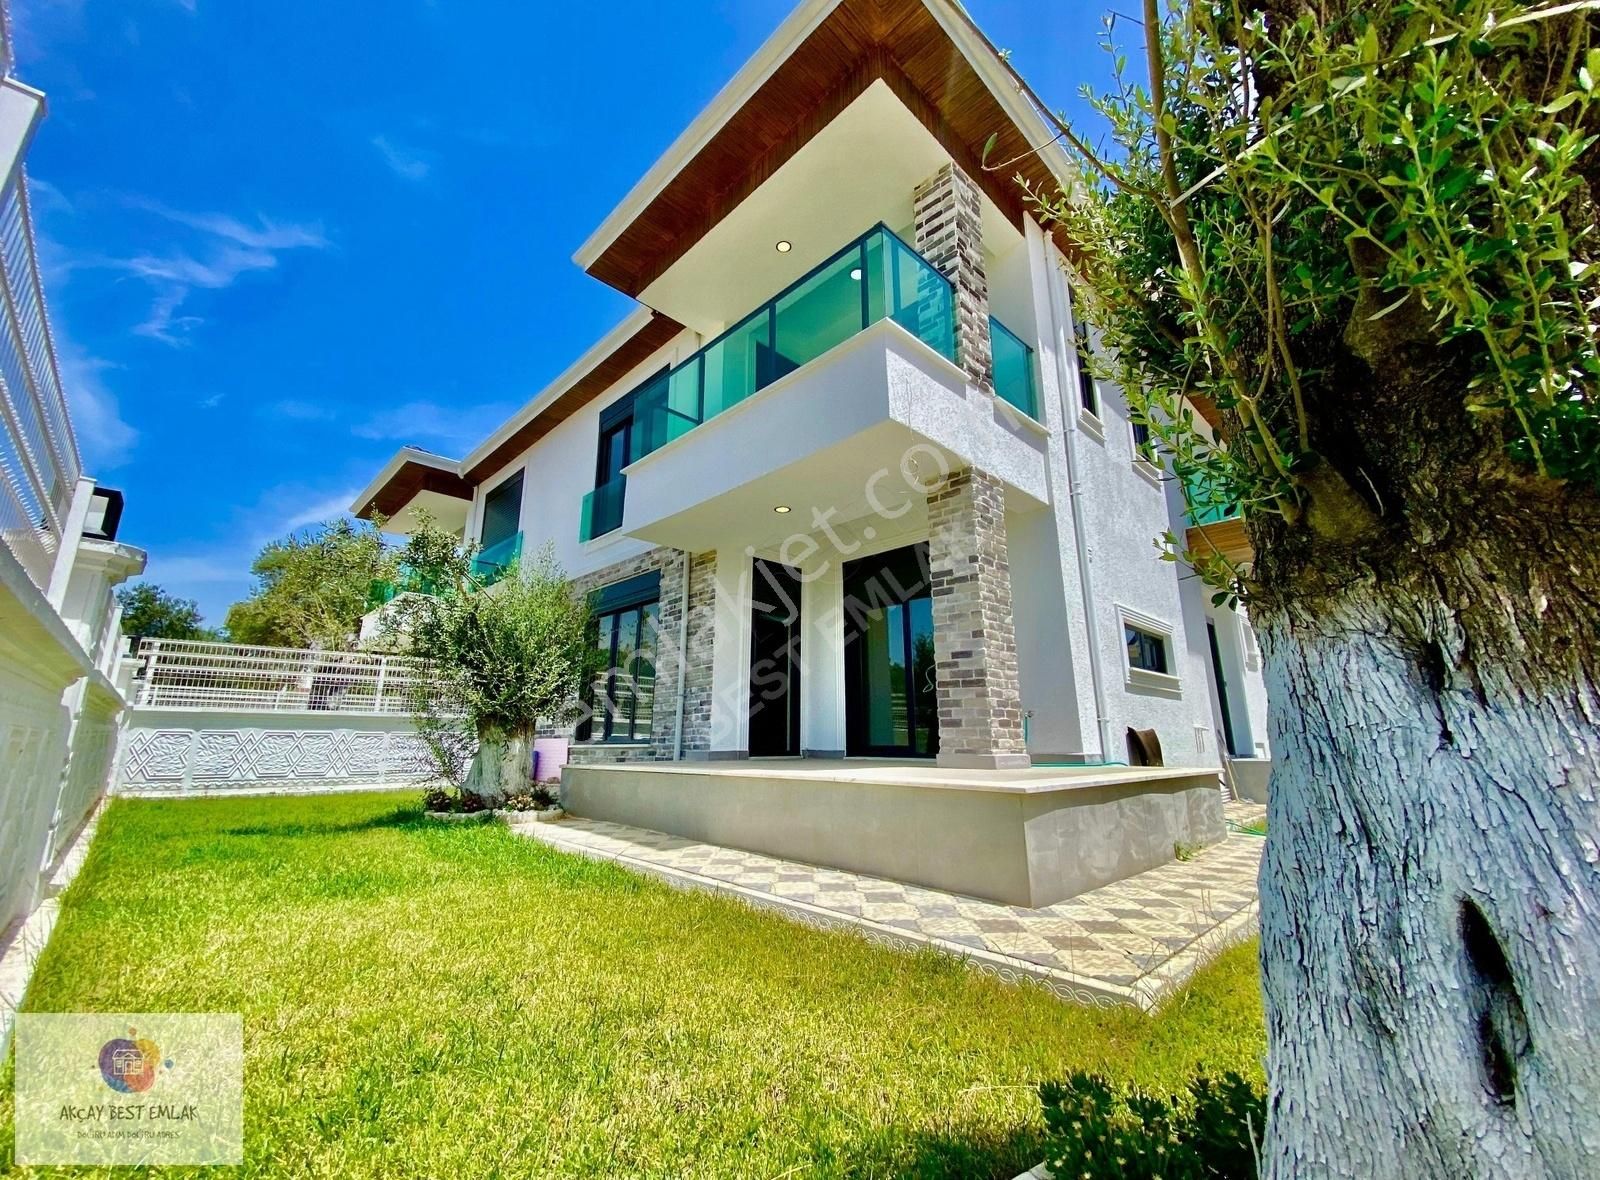 Edremit Zeytinli Satılık Villa ⫸ AKÇAY BEST EMLAK ⫷ ŞIK TASARIMLI BAĞIMSIZ LÜKS 4+1 VİLLA